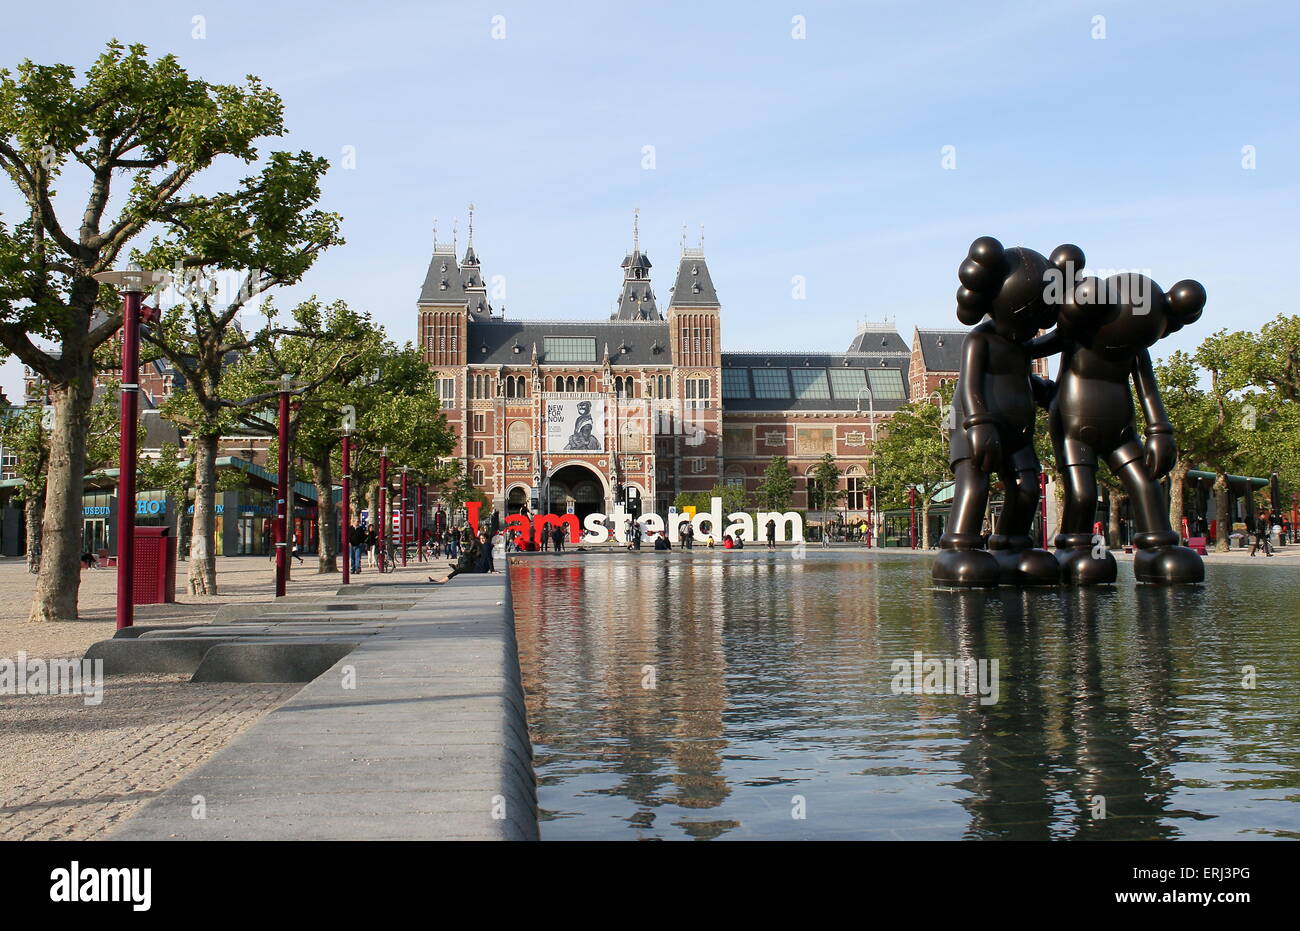 Sculture di New York artista KAWS durante il ArtZuid mostra sulla piazza Museumplein, Amsterdam. Il Rijksmuseum in background Foto Stock